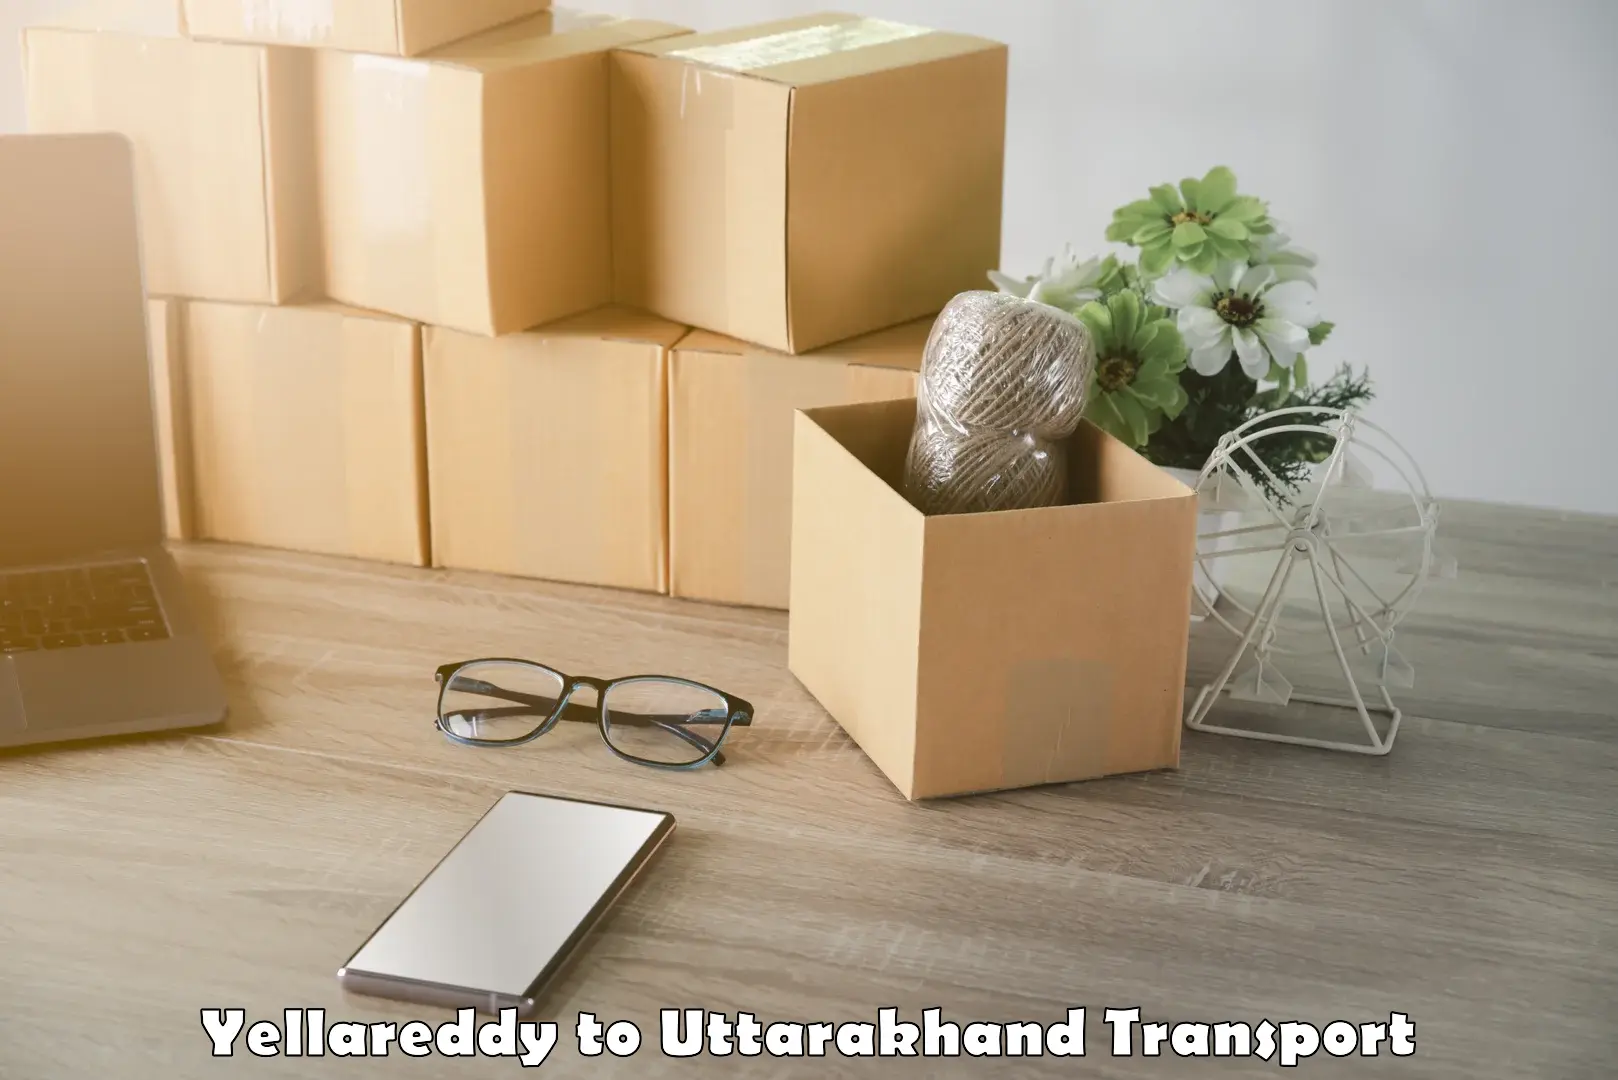 Goods delivery service Yellareddy to Uttarakhand